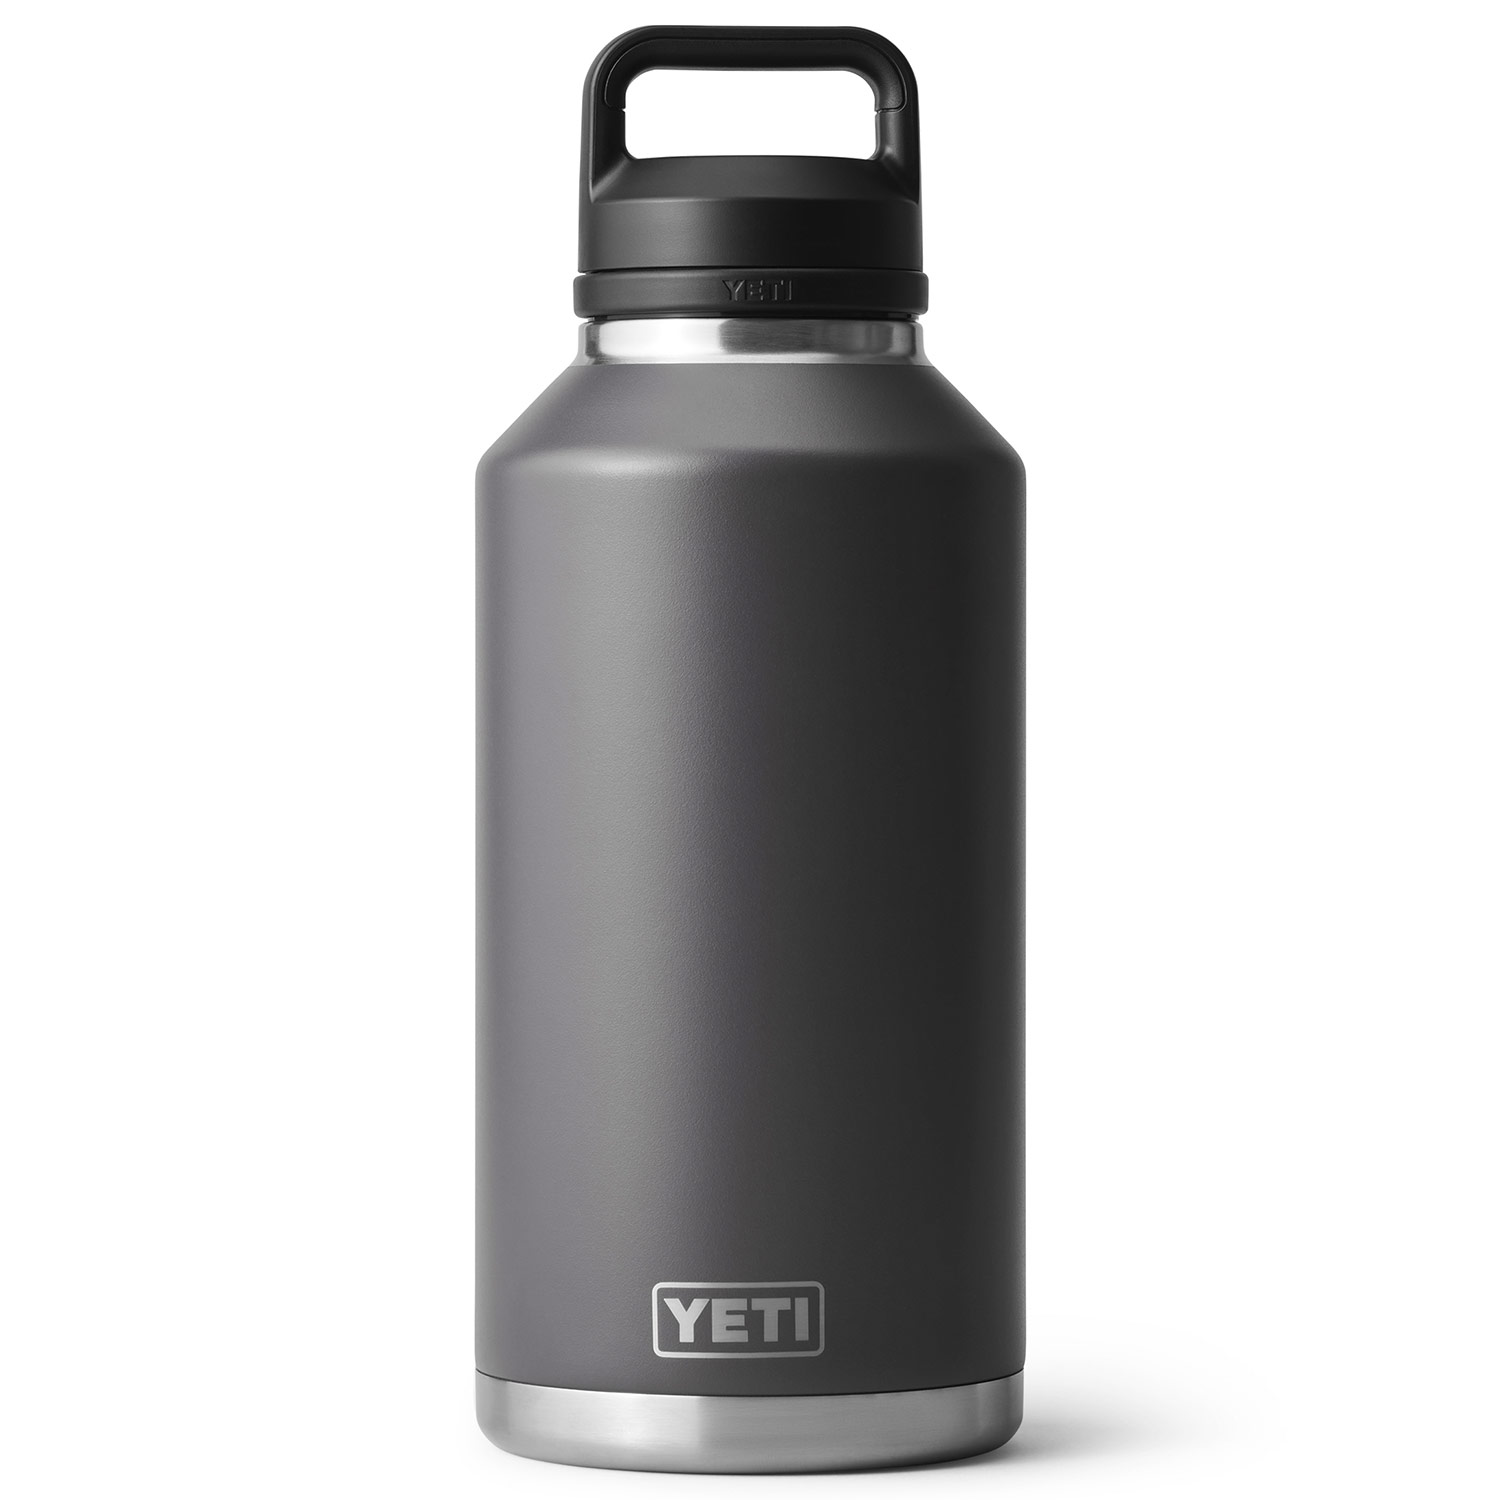 Yeti one gallon jug compared to half gallon jug and 64 oz Rambler